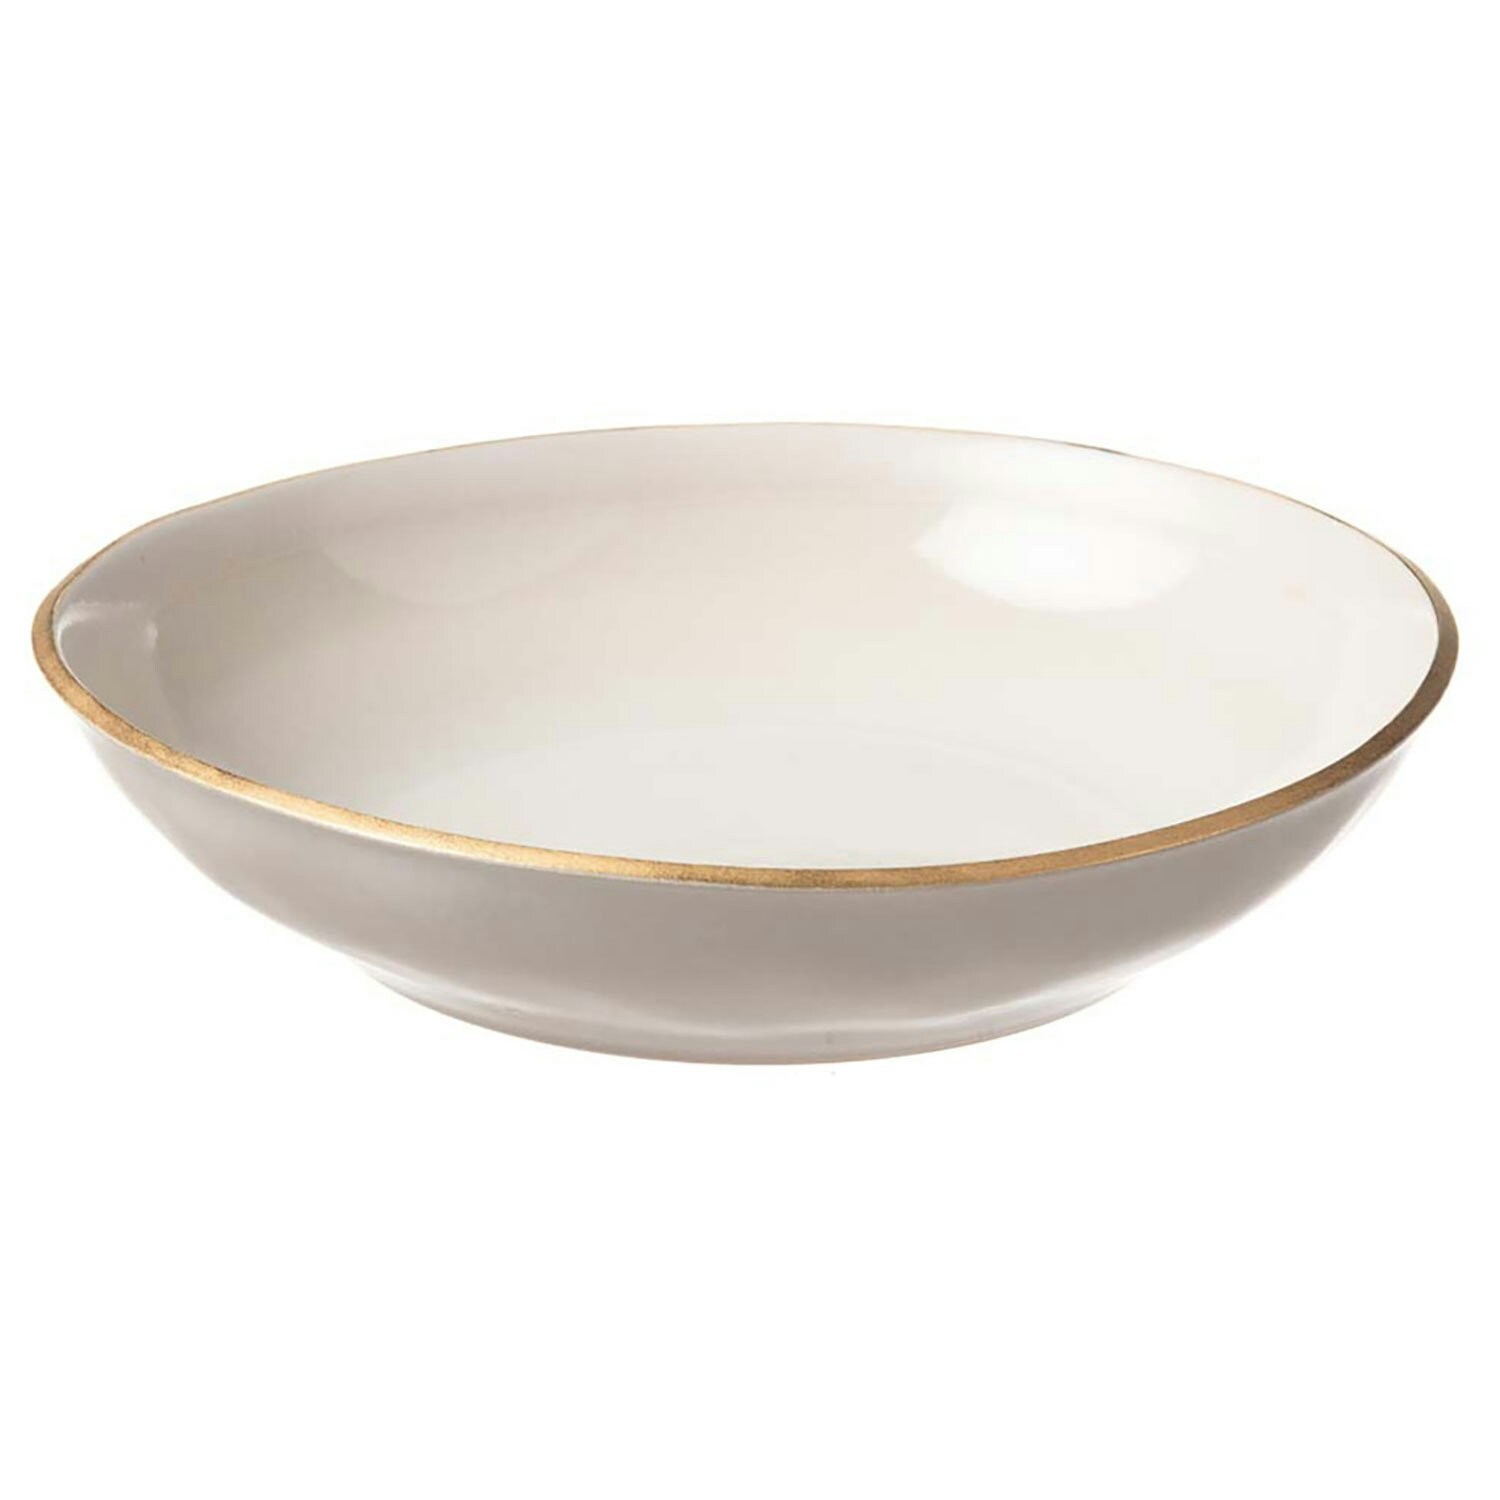 https://royaldesign.com/image/2/heirol-nosse-ceramics-edge-bowl-ivory-gold-7